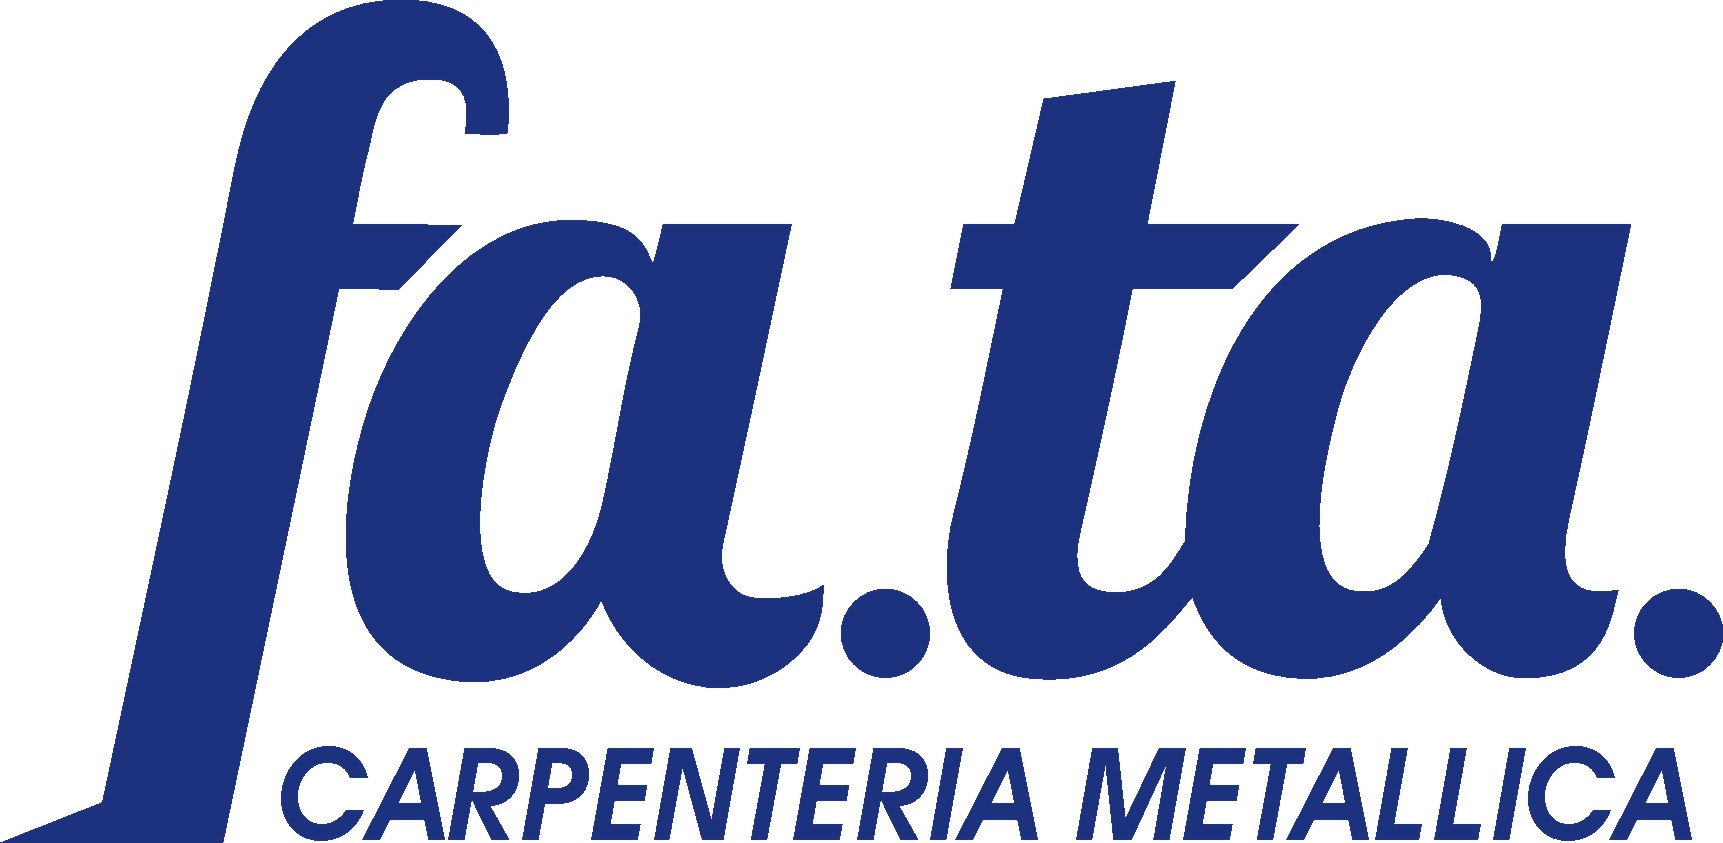 FATA CARPENTERIA logo